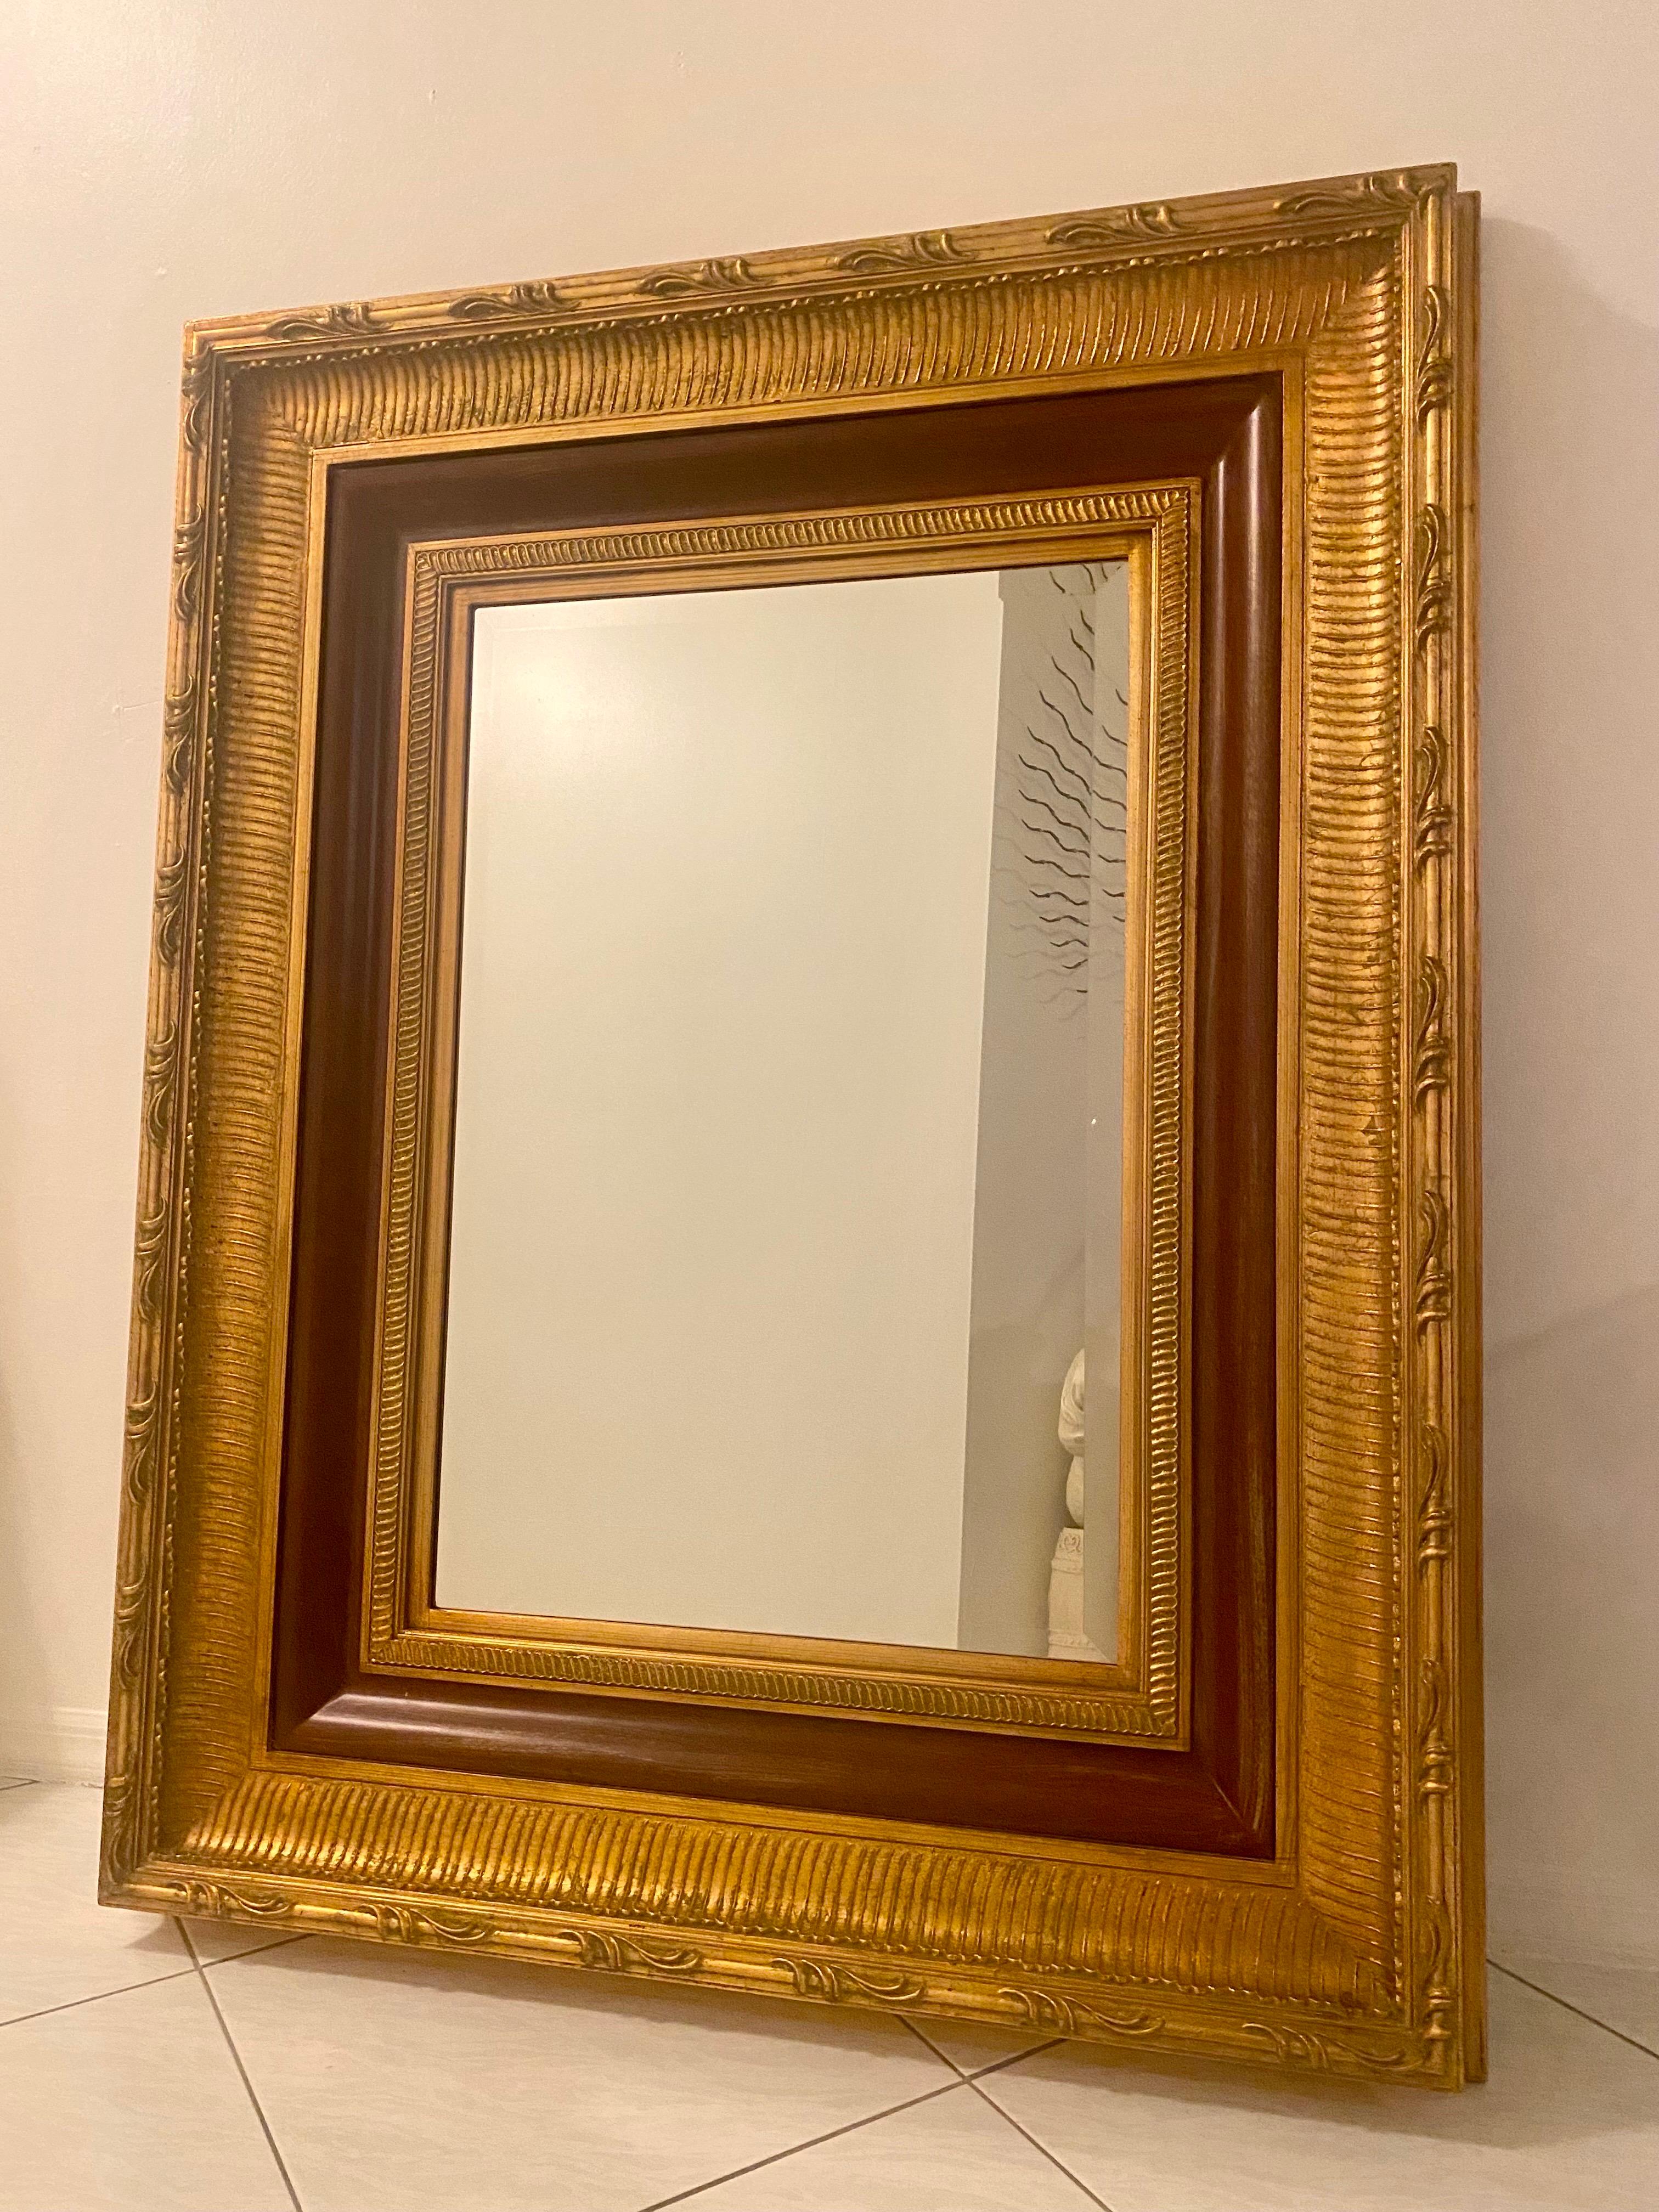 Ein großer, hochwertiger, vergoldeter Holzspiegel in sehr gutem Zustand aus einem Nachlass in Palm Beach. Er ist im Hollywood-Regency-Stil gehalten und besteht aus schwerem, luxuriösem Vergoldungsholz und einem Aufhängesystem aus Metall. Der Spiegel